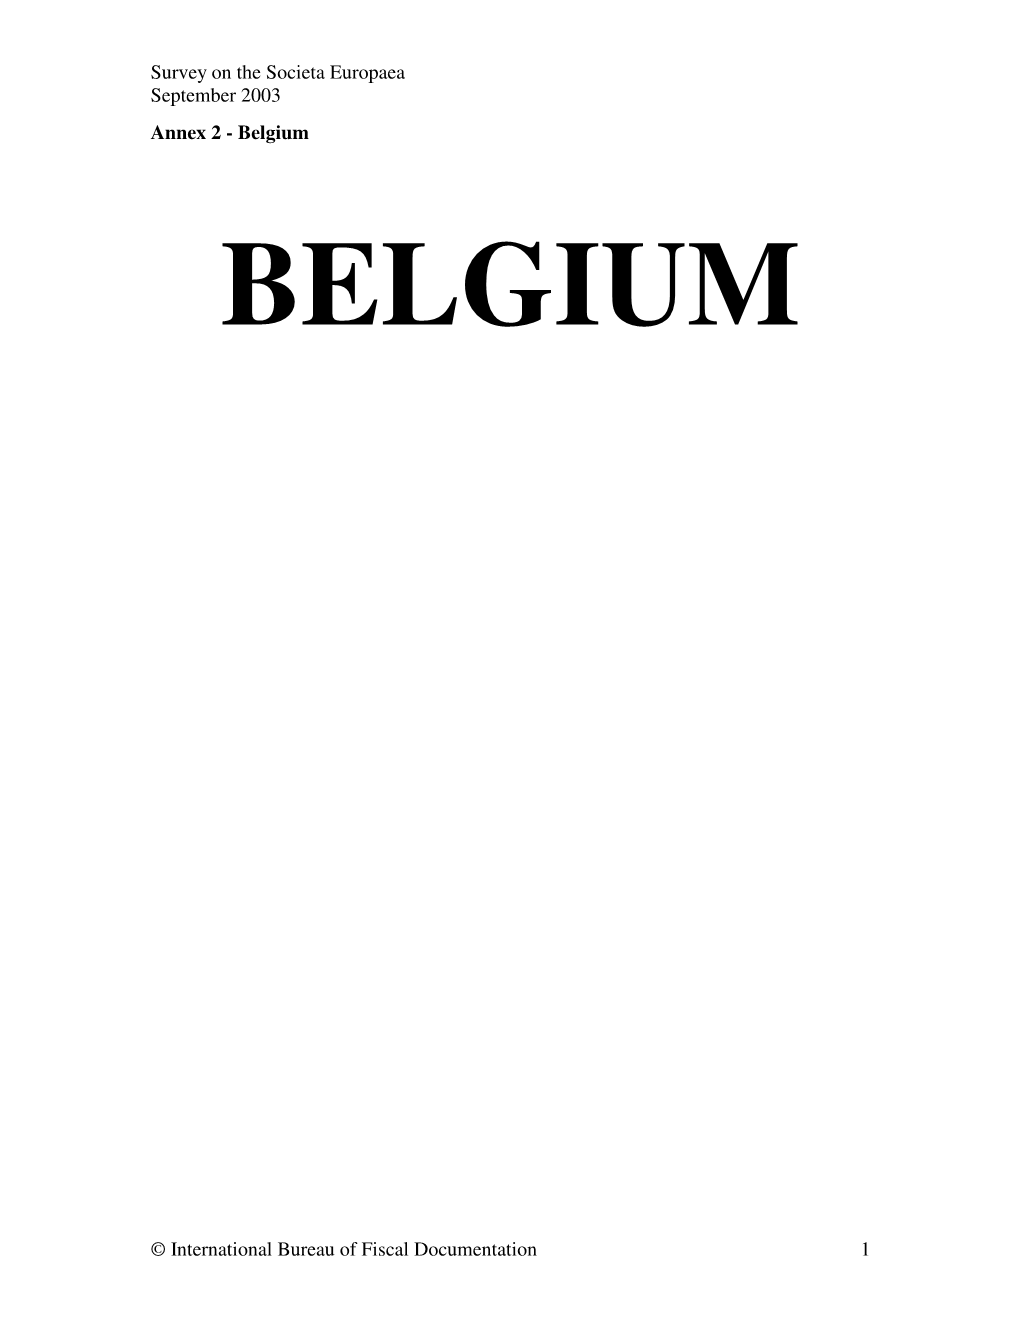 Annex 2 - Belgium